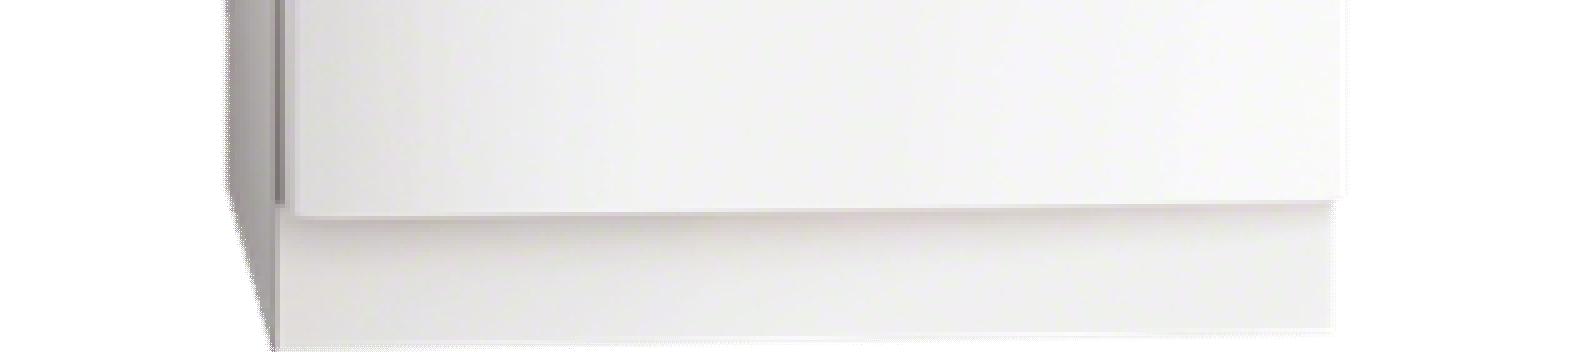 KEITTIÖN KODINKONEET (kalustekaavion mukaisesti) Liesikupu (Iloxair) Jääkaappipakastin (AEG) Ilox Basic väri valkoinen kirkas lasilippa valo ja rasvasuodatin leveys 60 cm Kuva viitteellinen